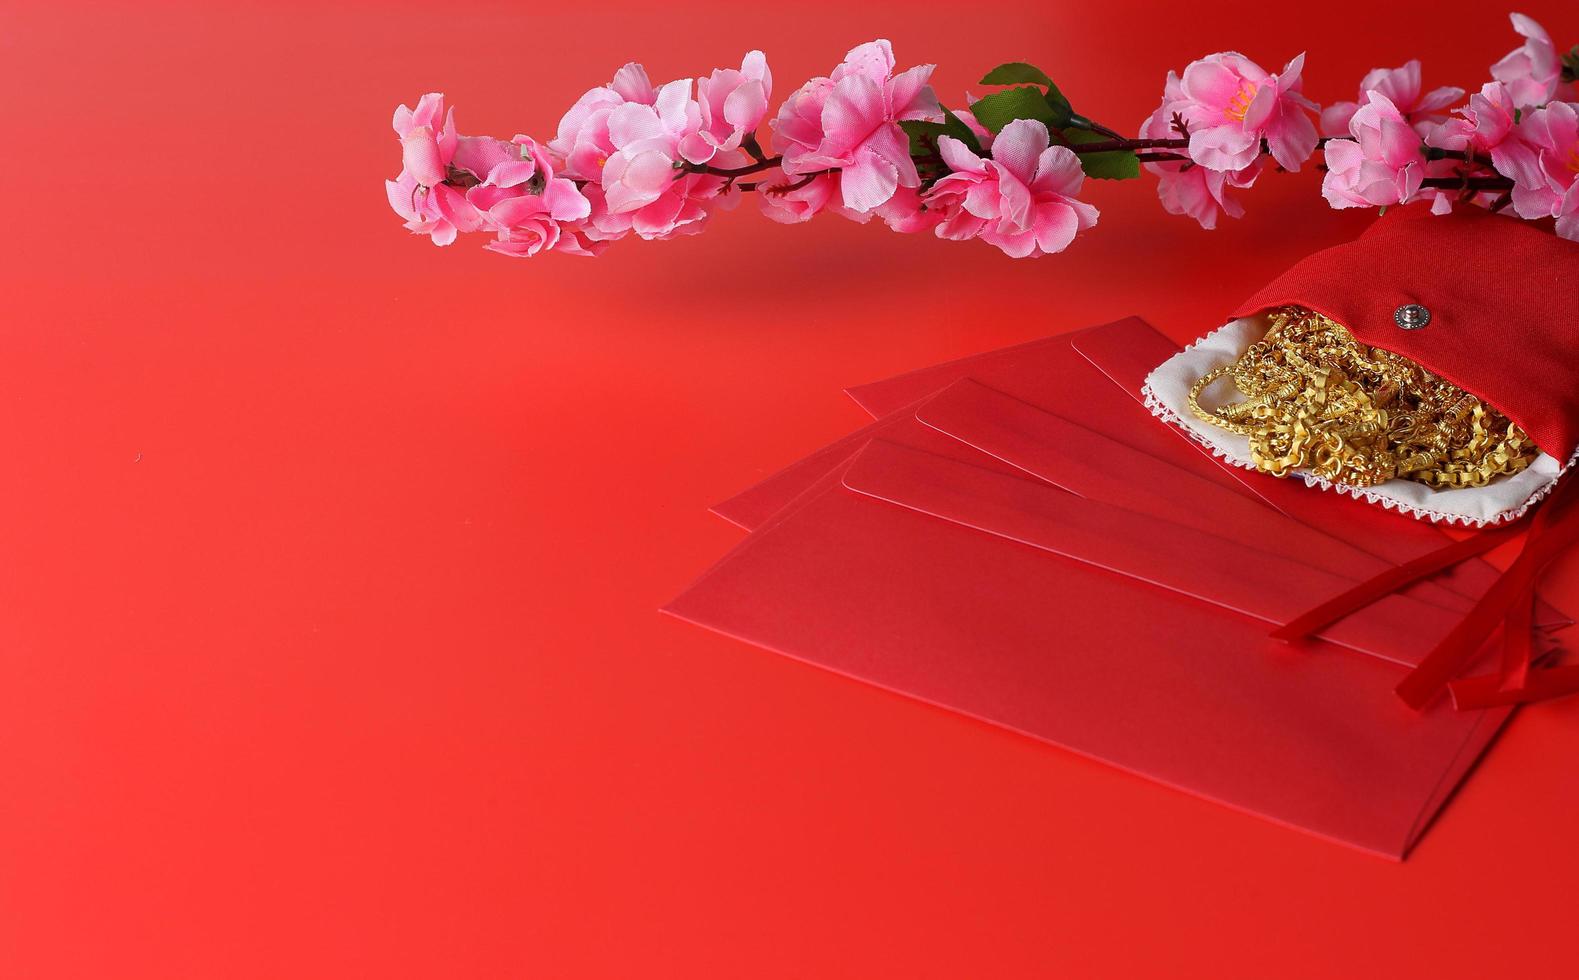 fond de nouvel an chinois - enveloppe rouge, fleur de prunier et ornement d'or sur fond rouge photo